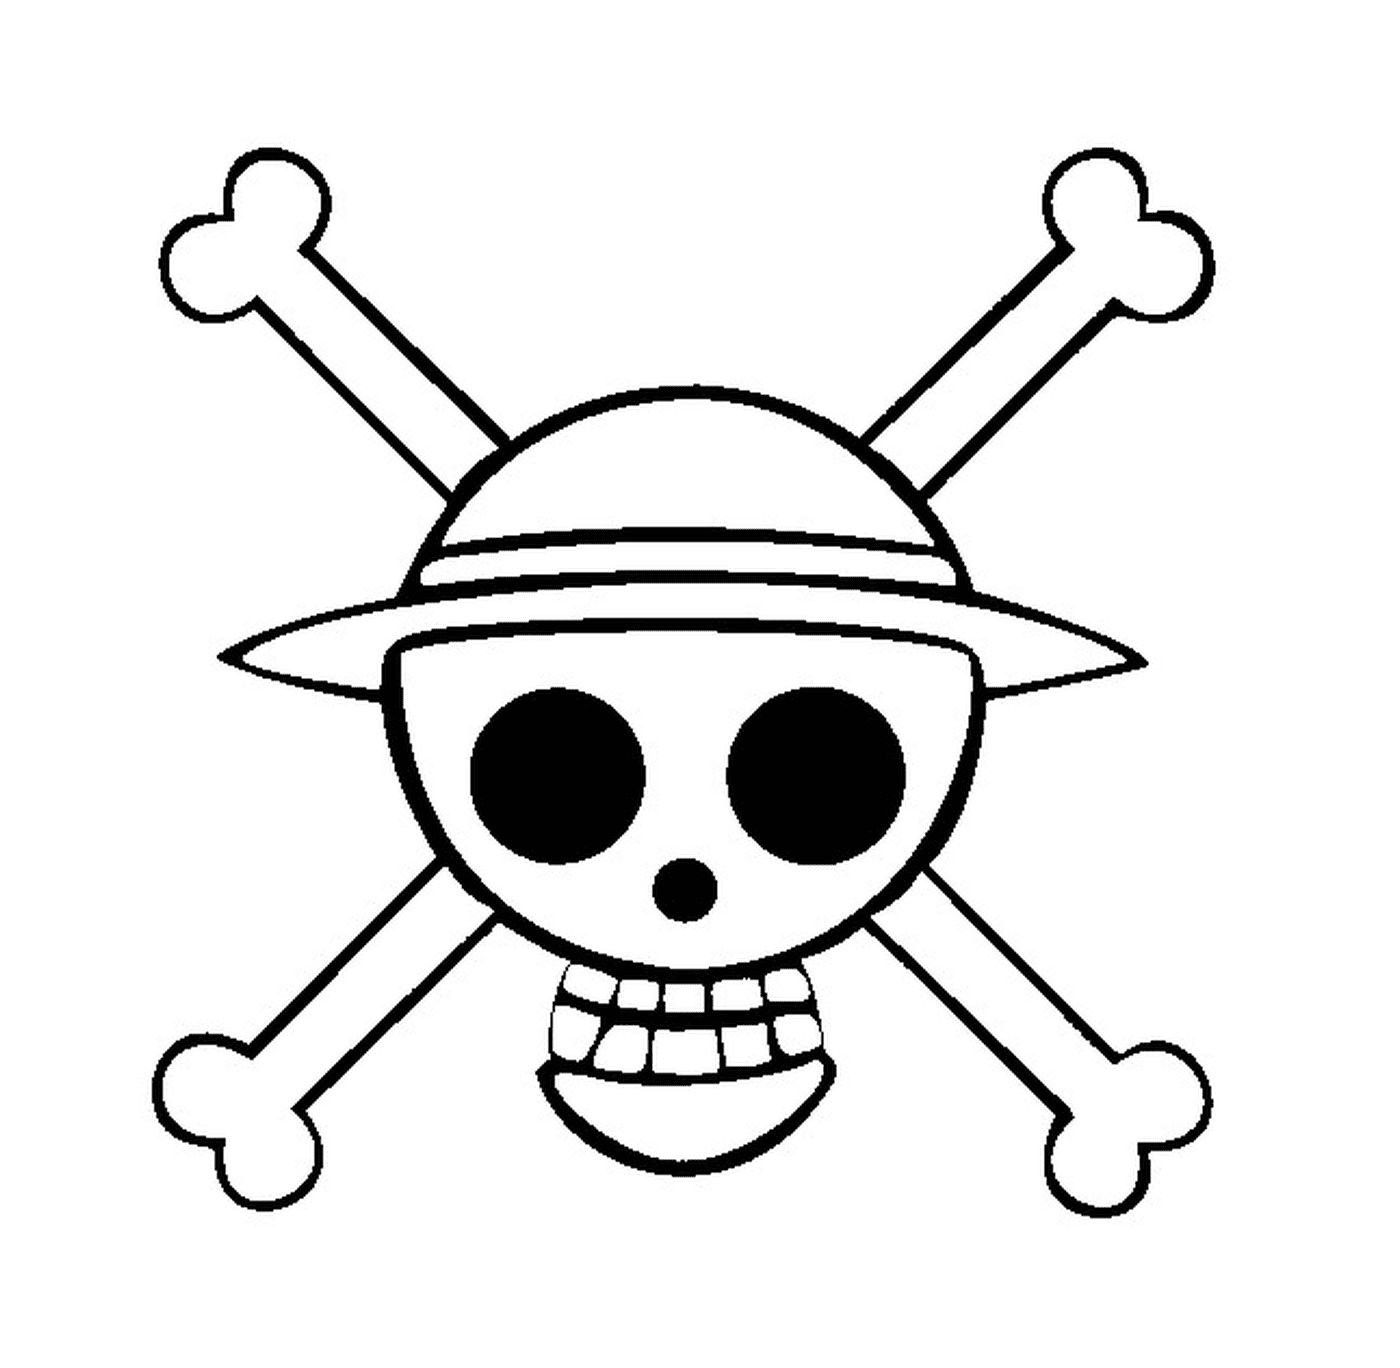  Logotipo de uma peça, símbolo pirata 